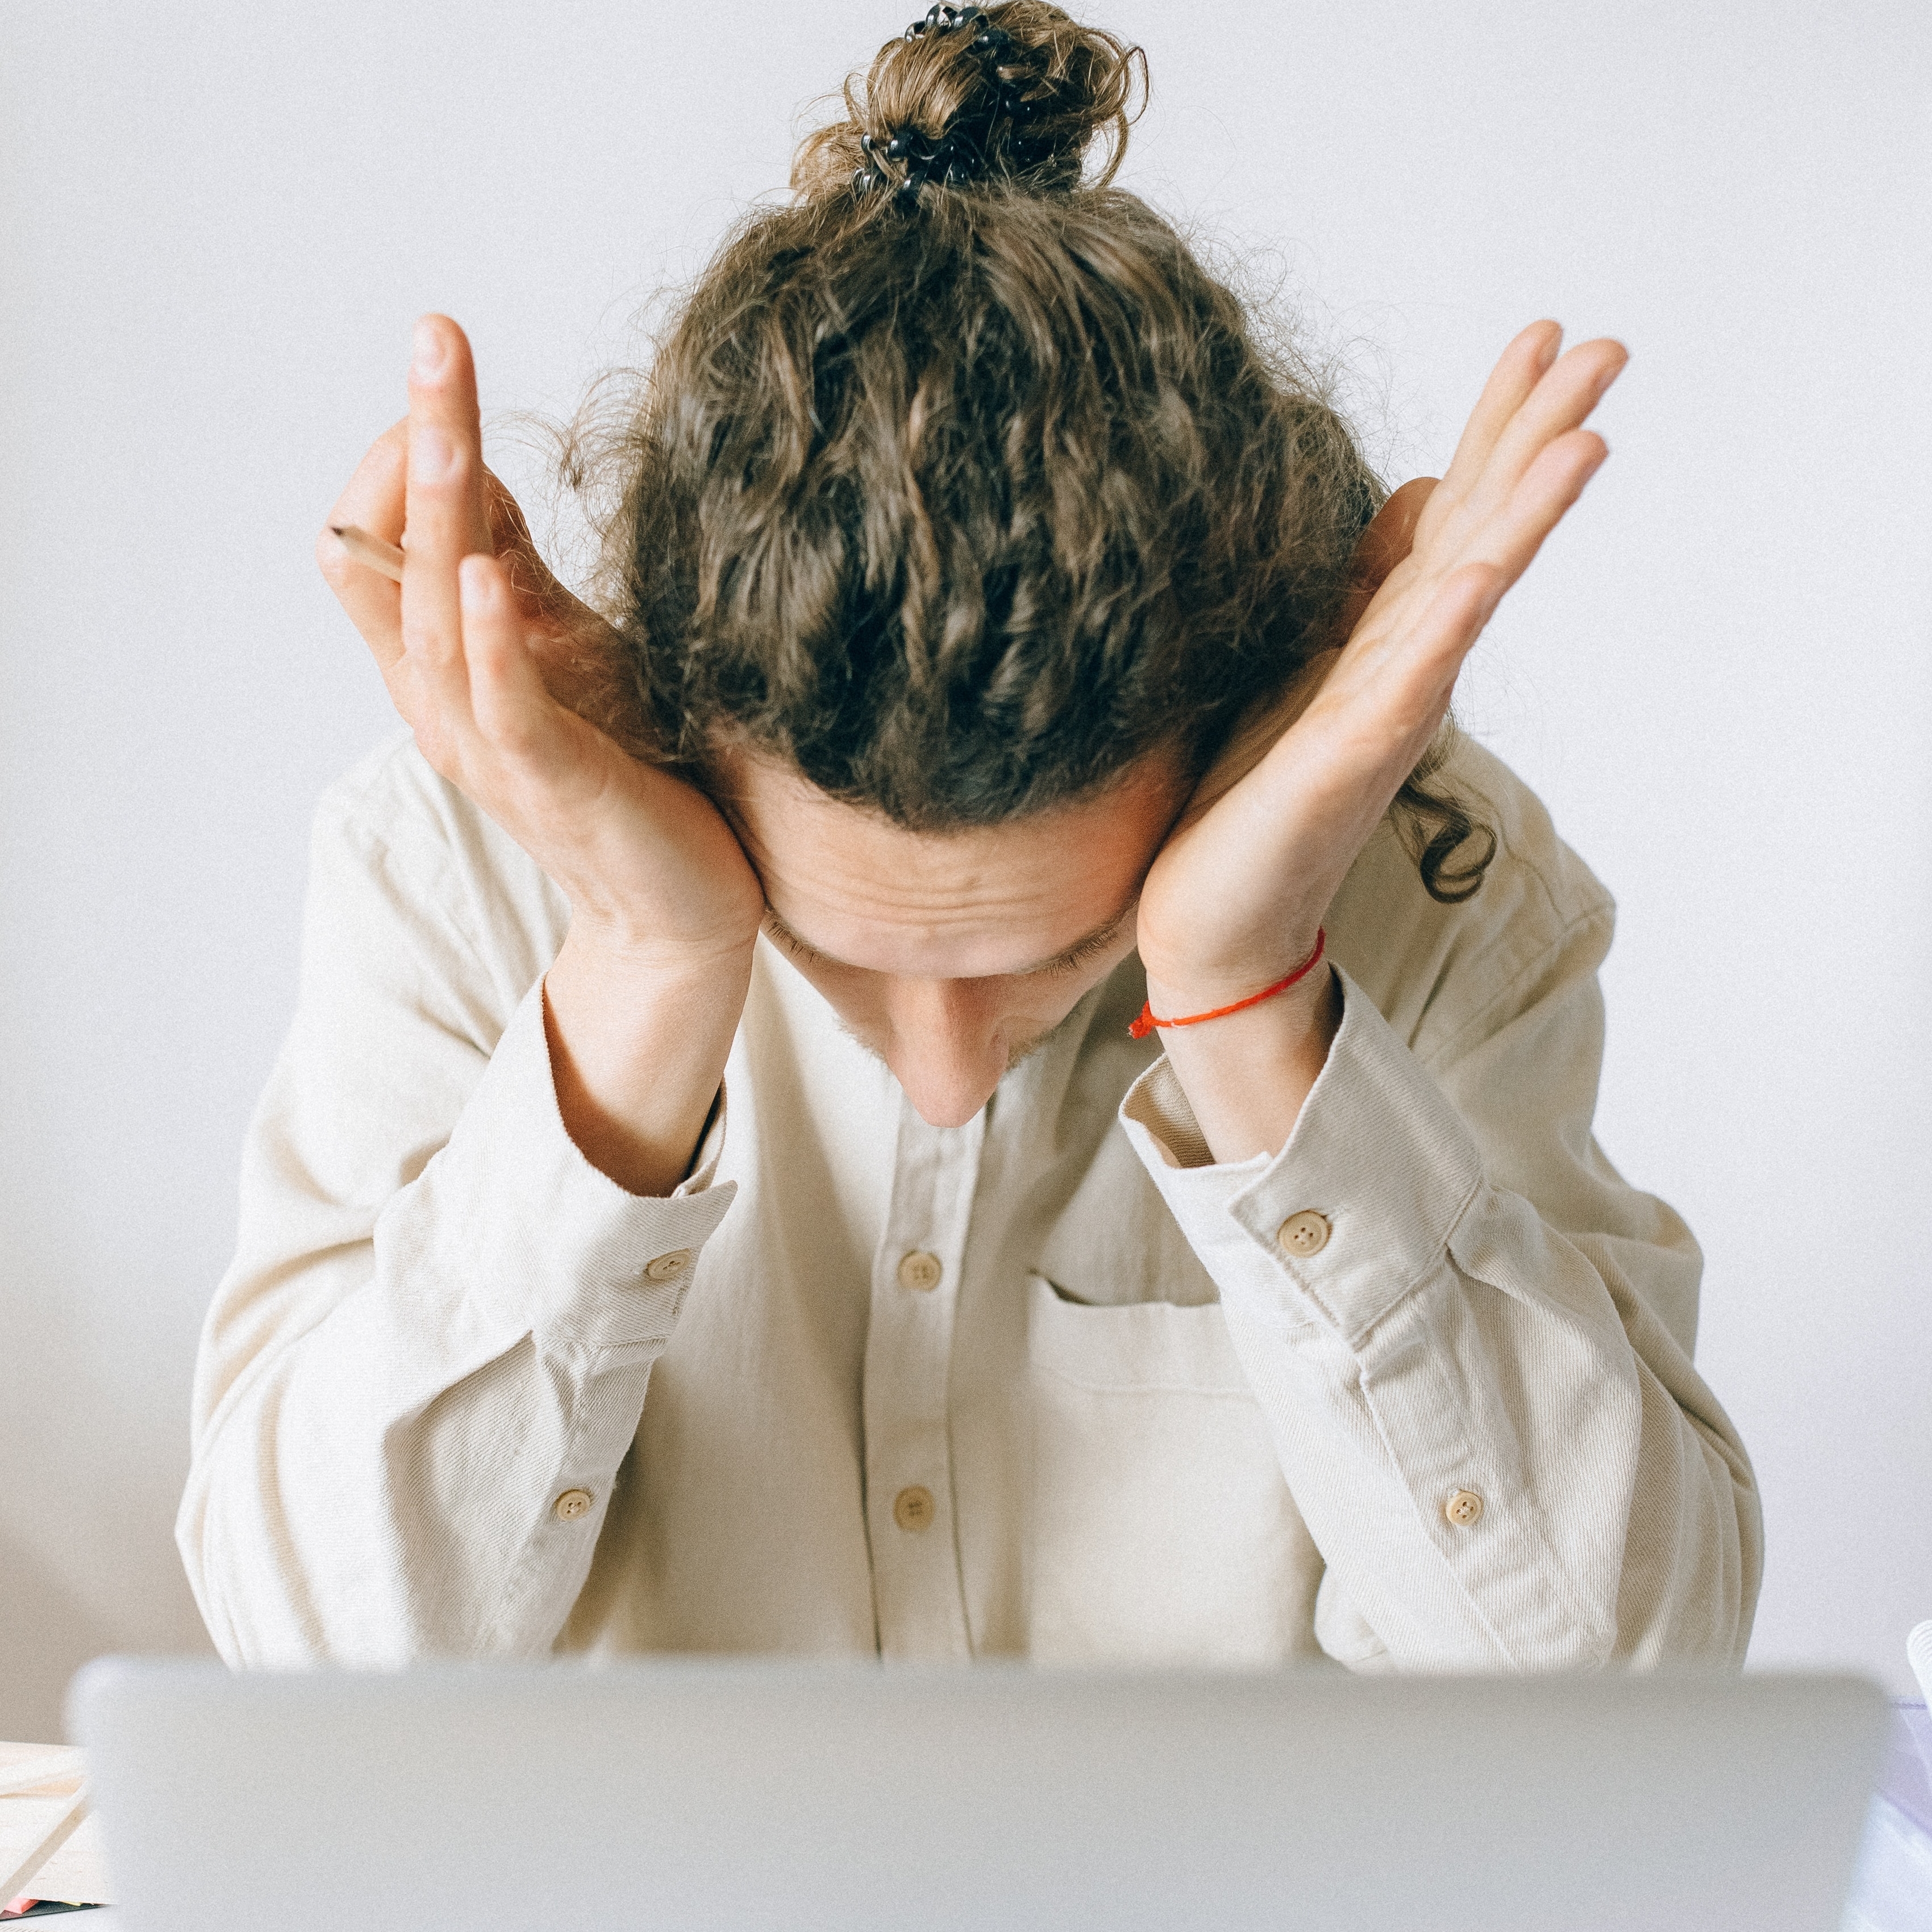 Schmuckbild: Eine Person sitzt vor einem Laptop und stützt den Kopf auf die Hände.